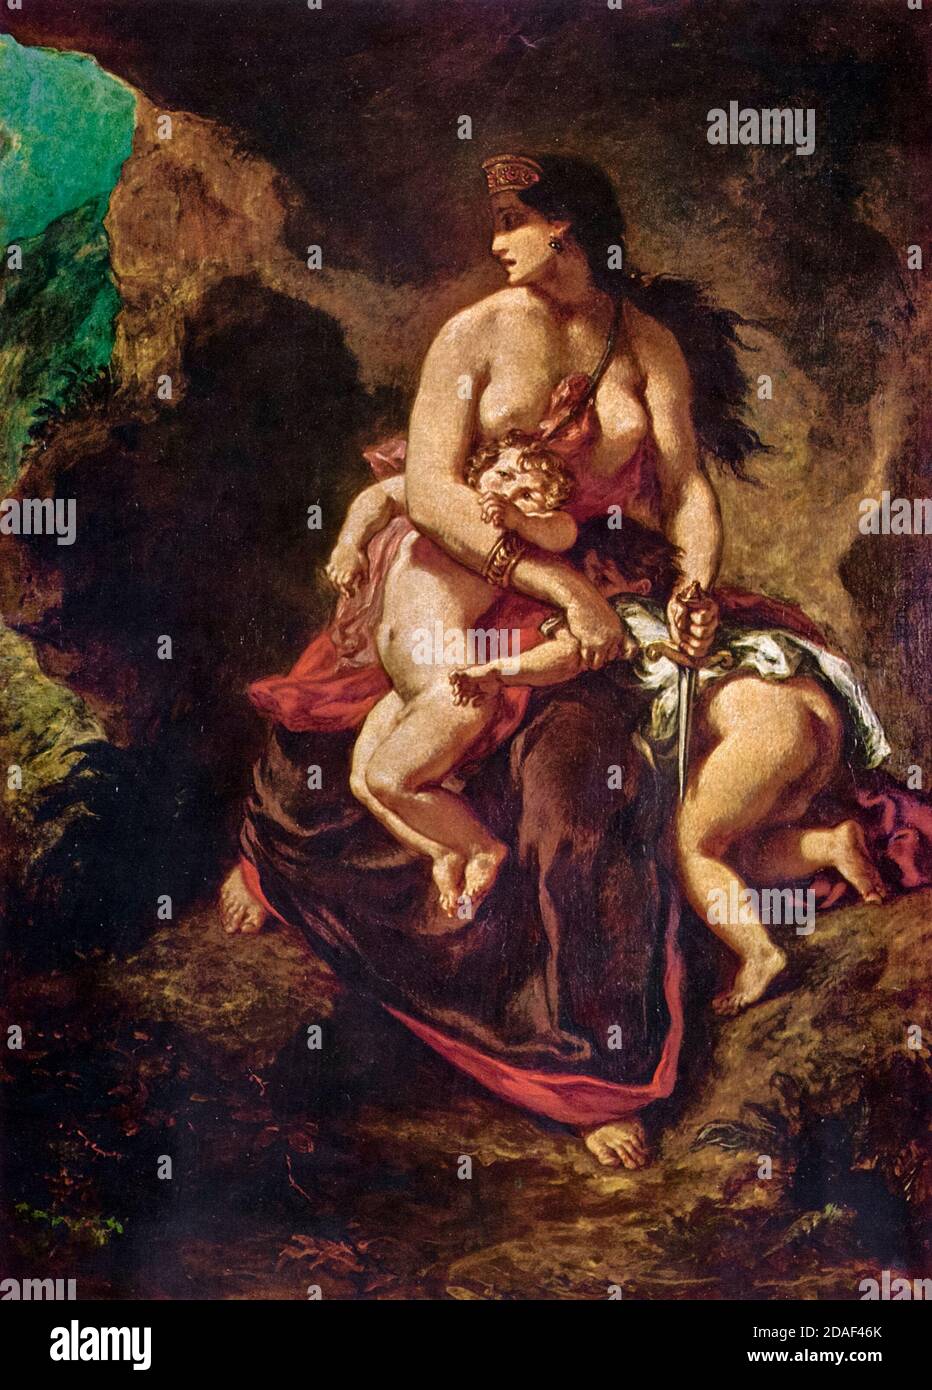 Eugène Delacroix, Medea sur le point de tuer ses enfants, peinture, 1862 Banque D'Images